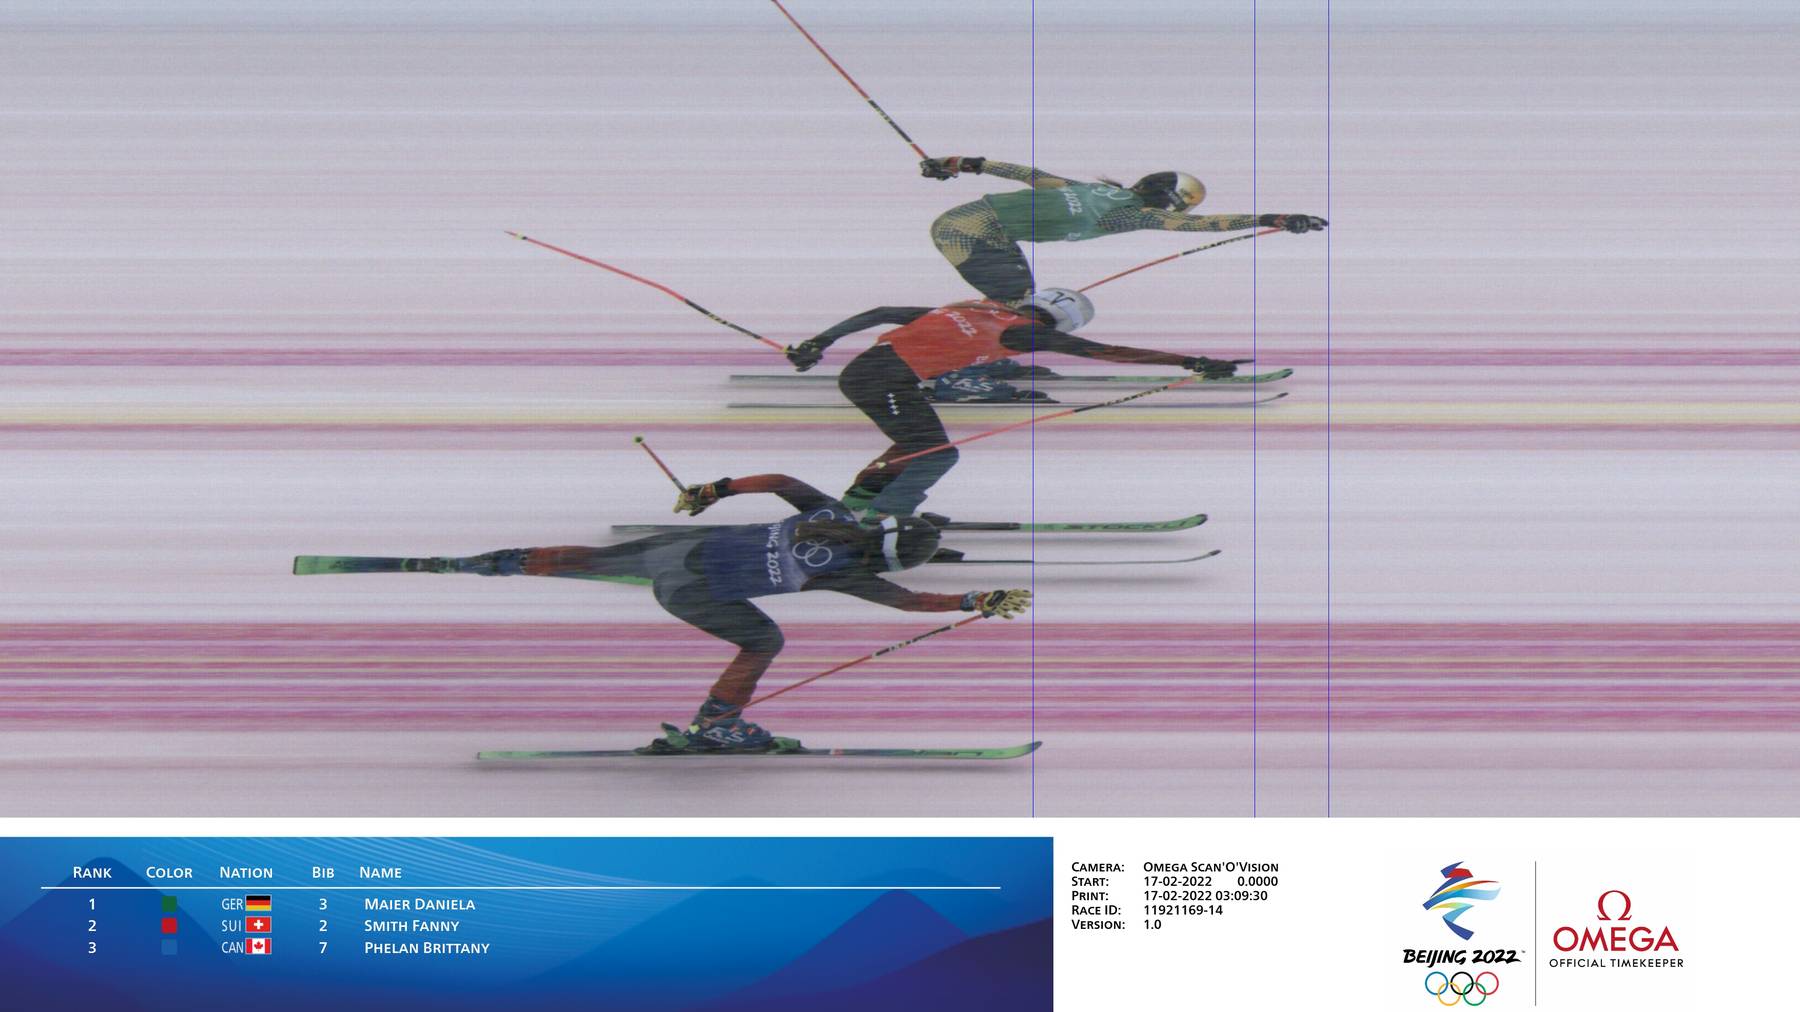 Hier entscheidet das Zielfoto zu Gunsten der Schweizer Skicrosserin Fanny Smith, die als Zweite den Finaleinzug schafft.